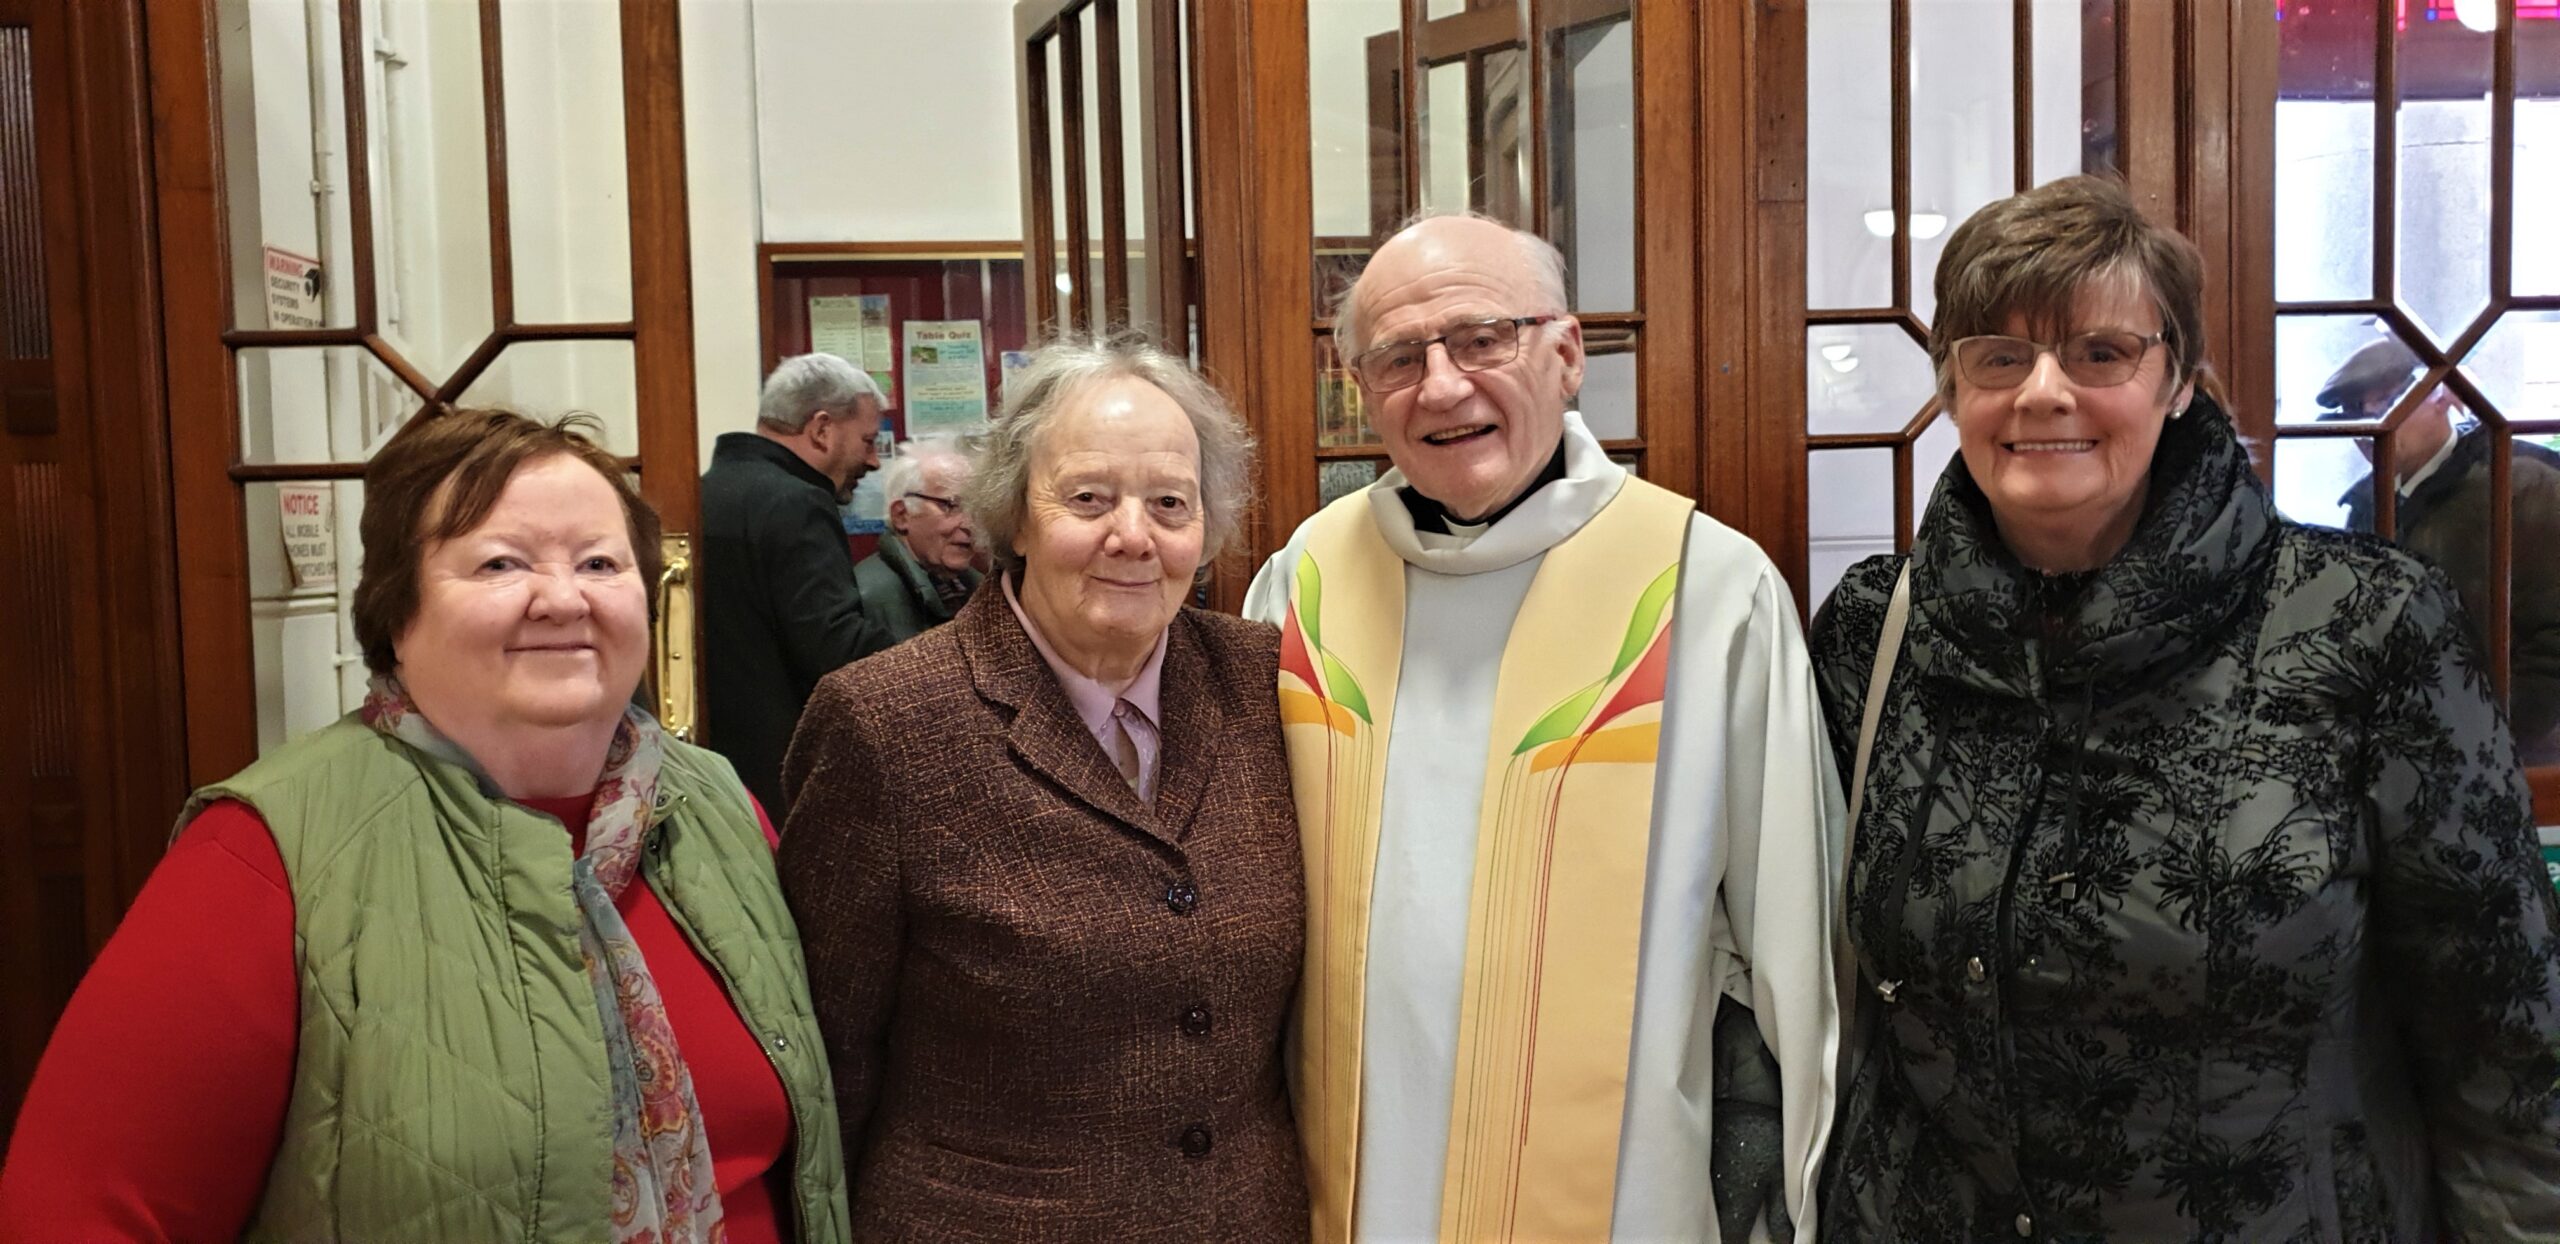 El arzobispo rinde homenaje al “efecto notable” de Pioneers en la sociedad irlandesa